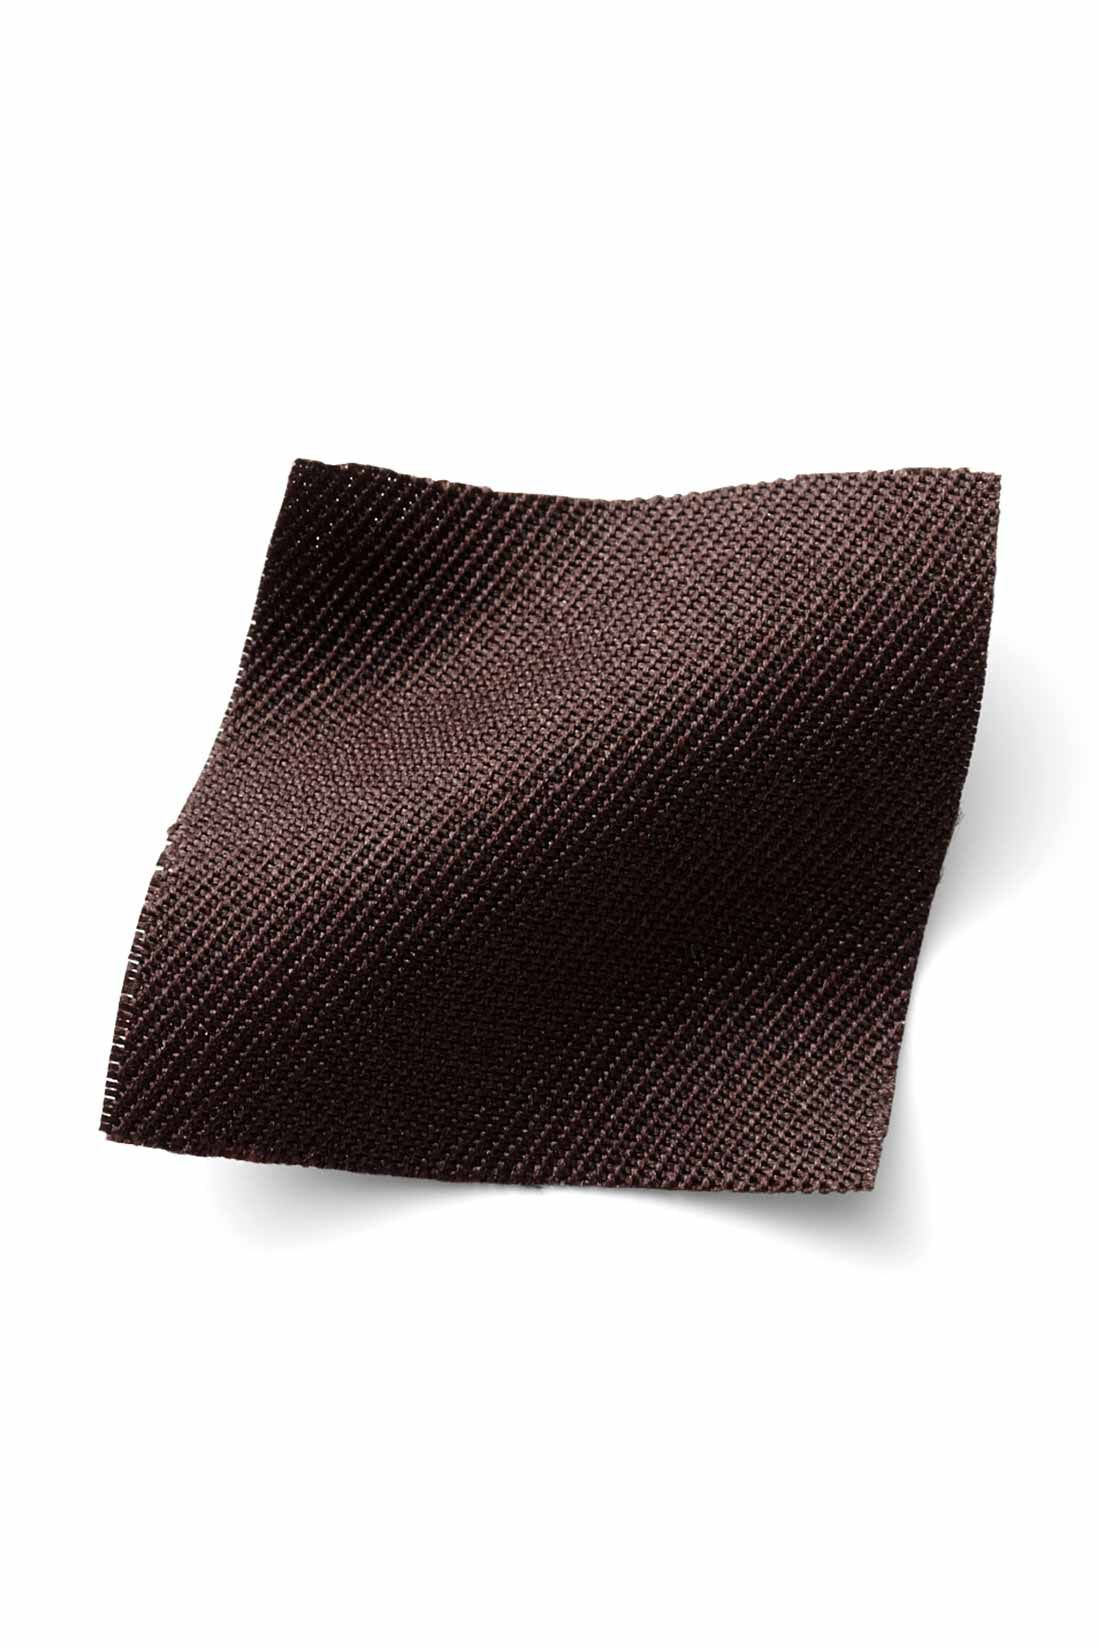 IEDIT[イディット]　着まわし広がる 2-WAY仕様がうれしい大人シルエットのジャンパースカート〈ブラウン〉|季節を問わずはきやすい、ほどよい厚みの布はく素材。 ※お届けするカラーとは異なります。